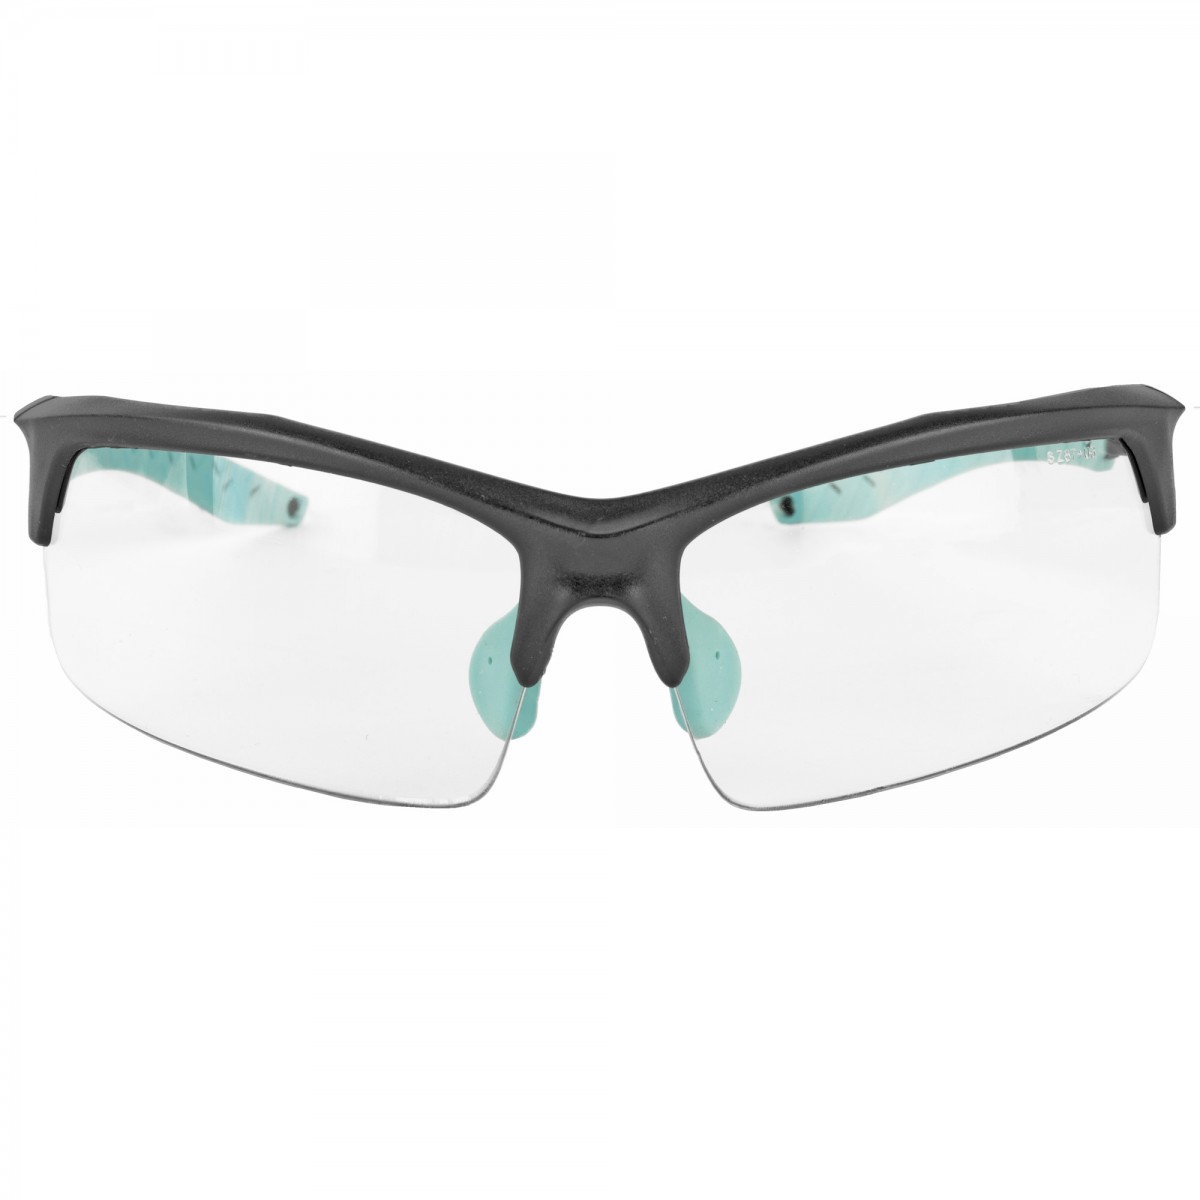 https://gunmagwarehouse.com/media/catalog/product/cache/1/image/1200x1200/9df78eab33525d08d6e5fb8d27136e95/w/a/walkers-impact-resistant-glasses-teal.jpg